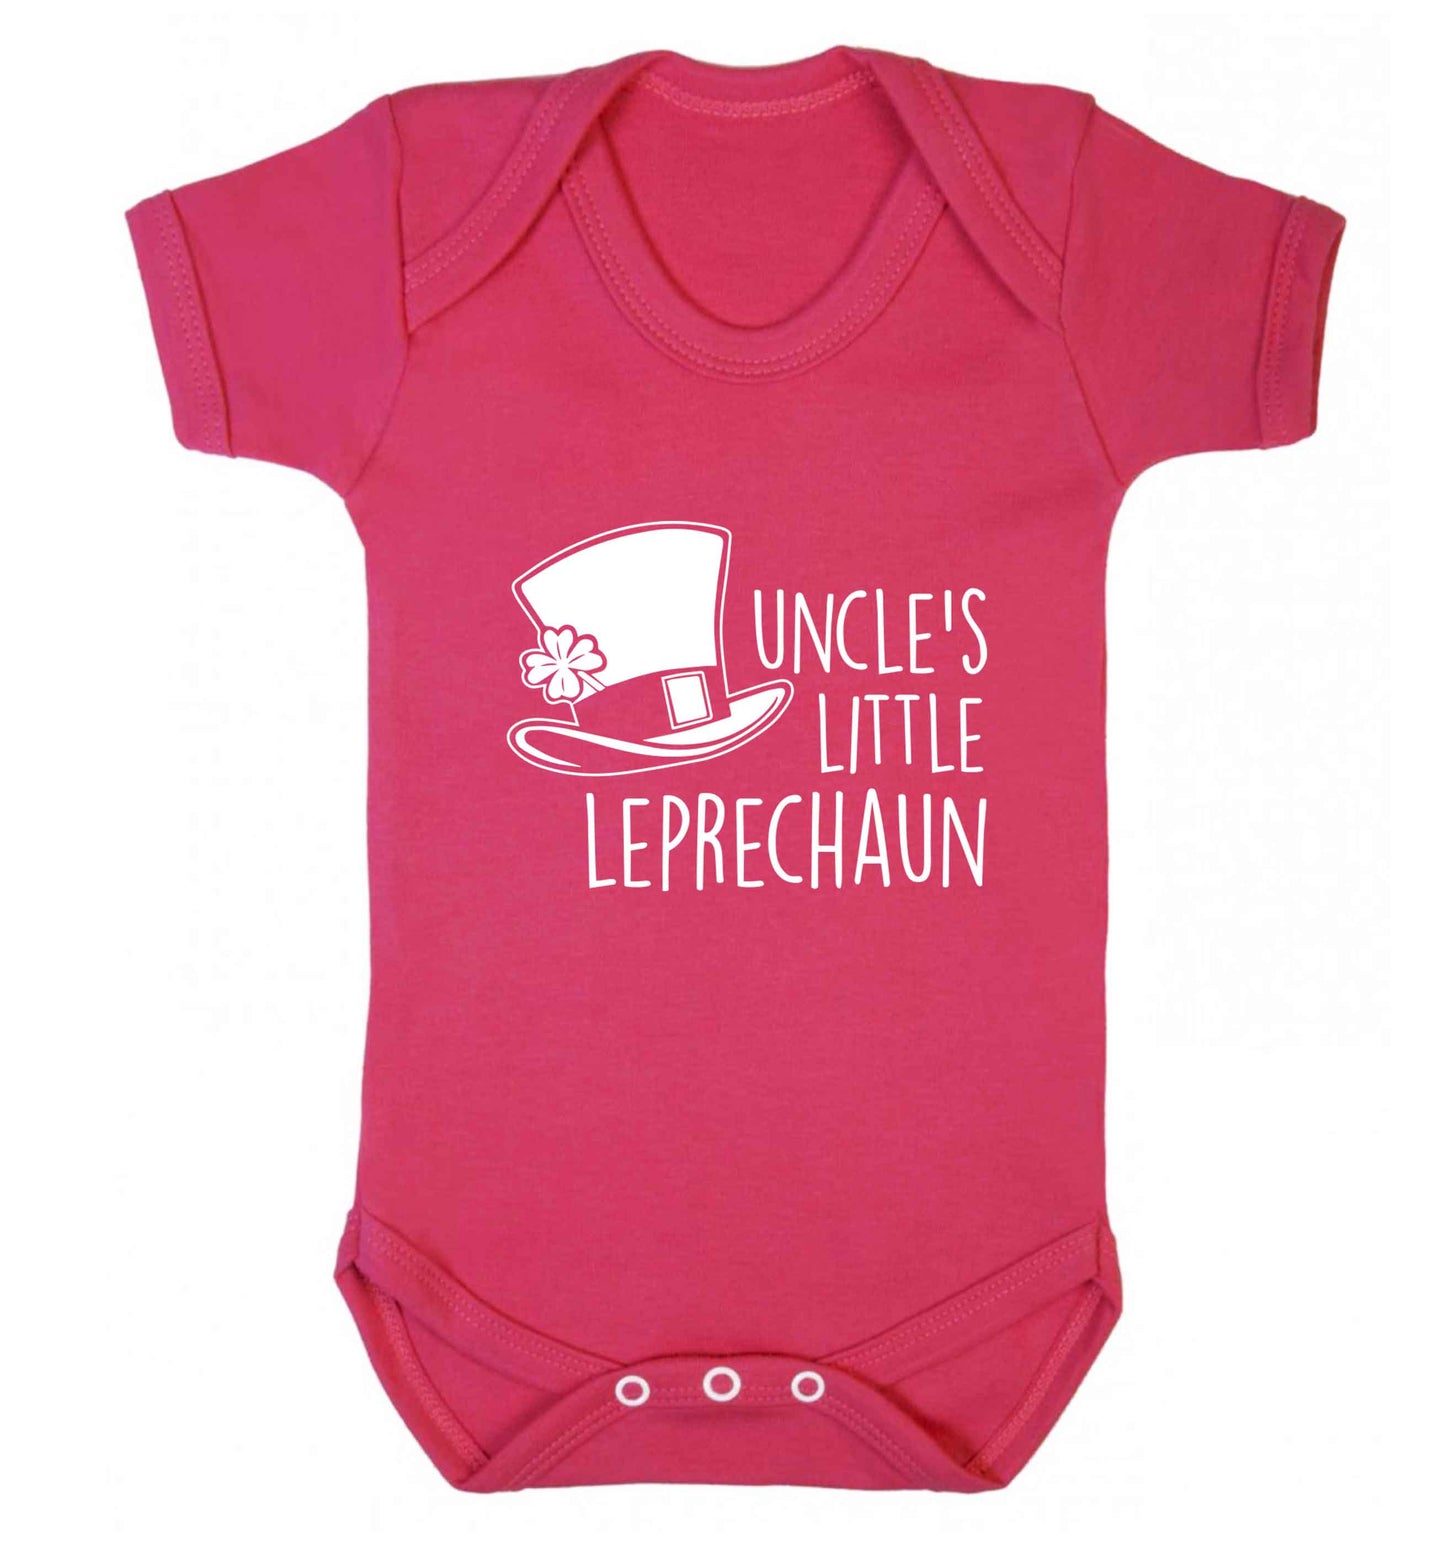 Uncles little leprechaun baby vest dark pink 18-24 months